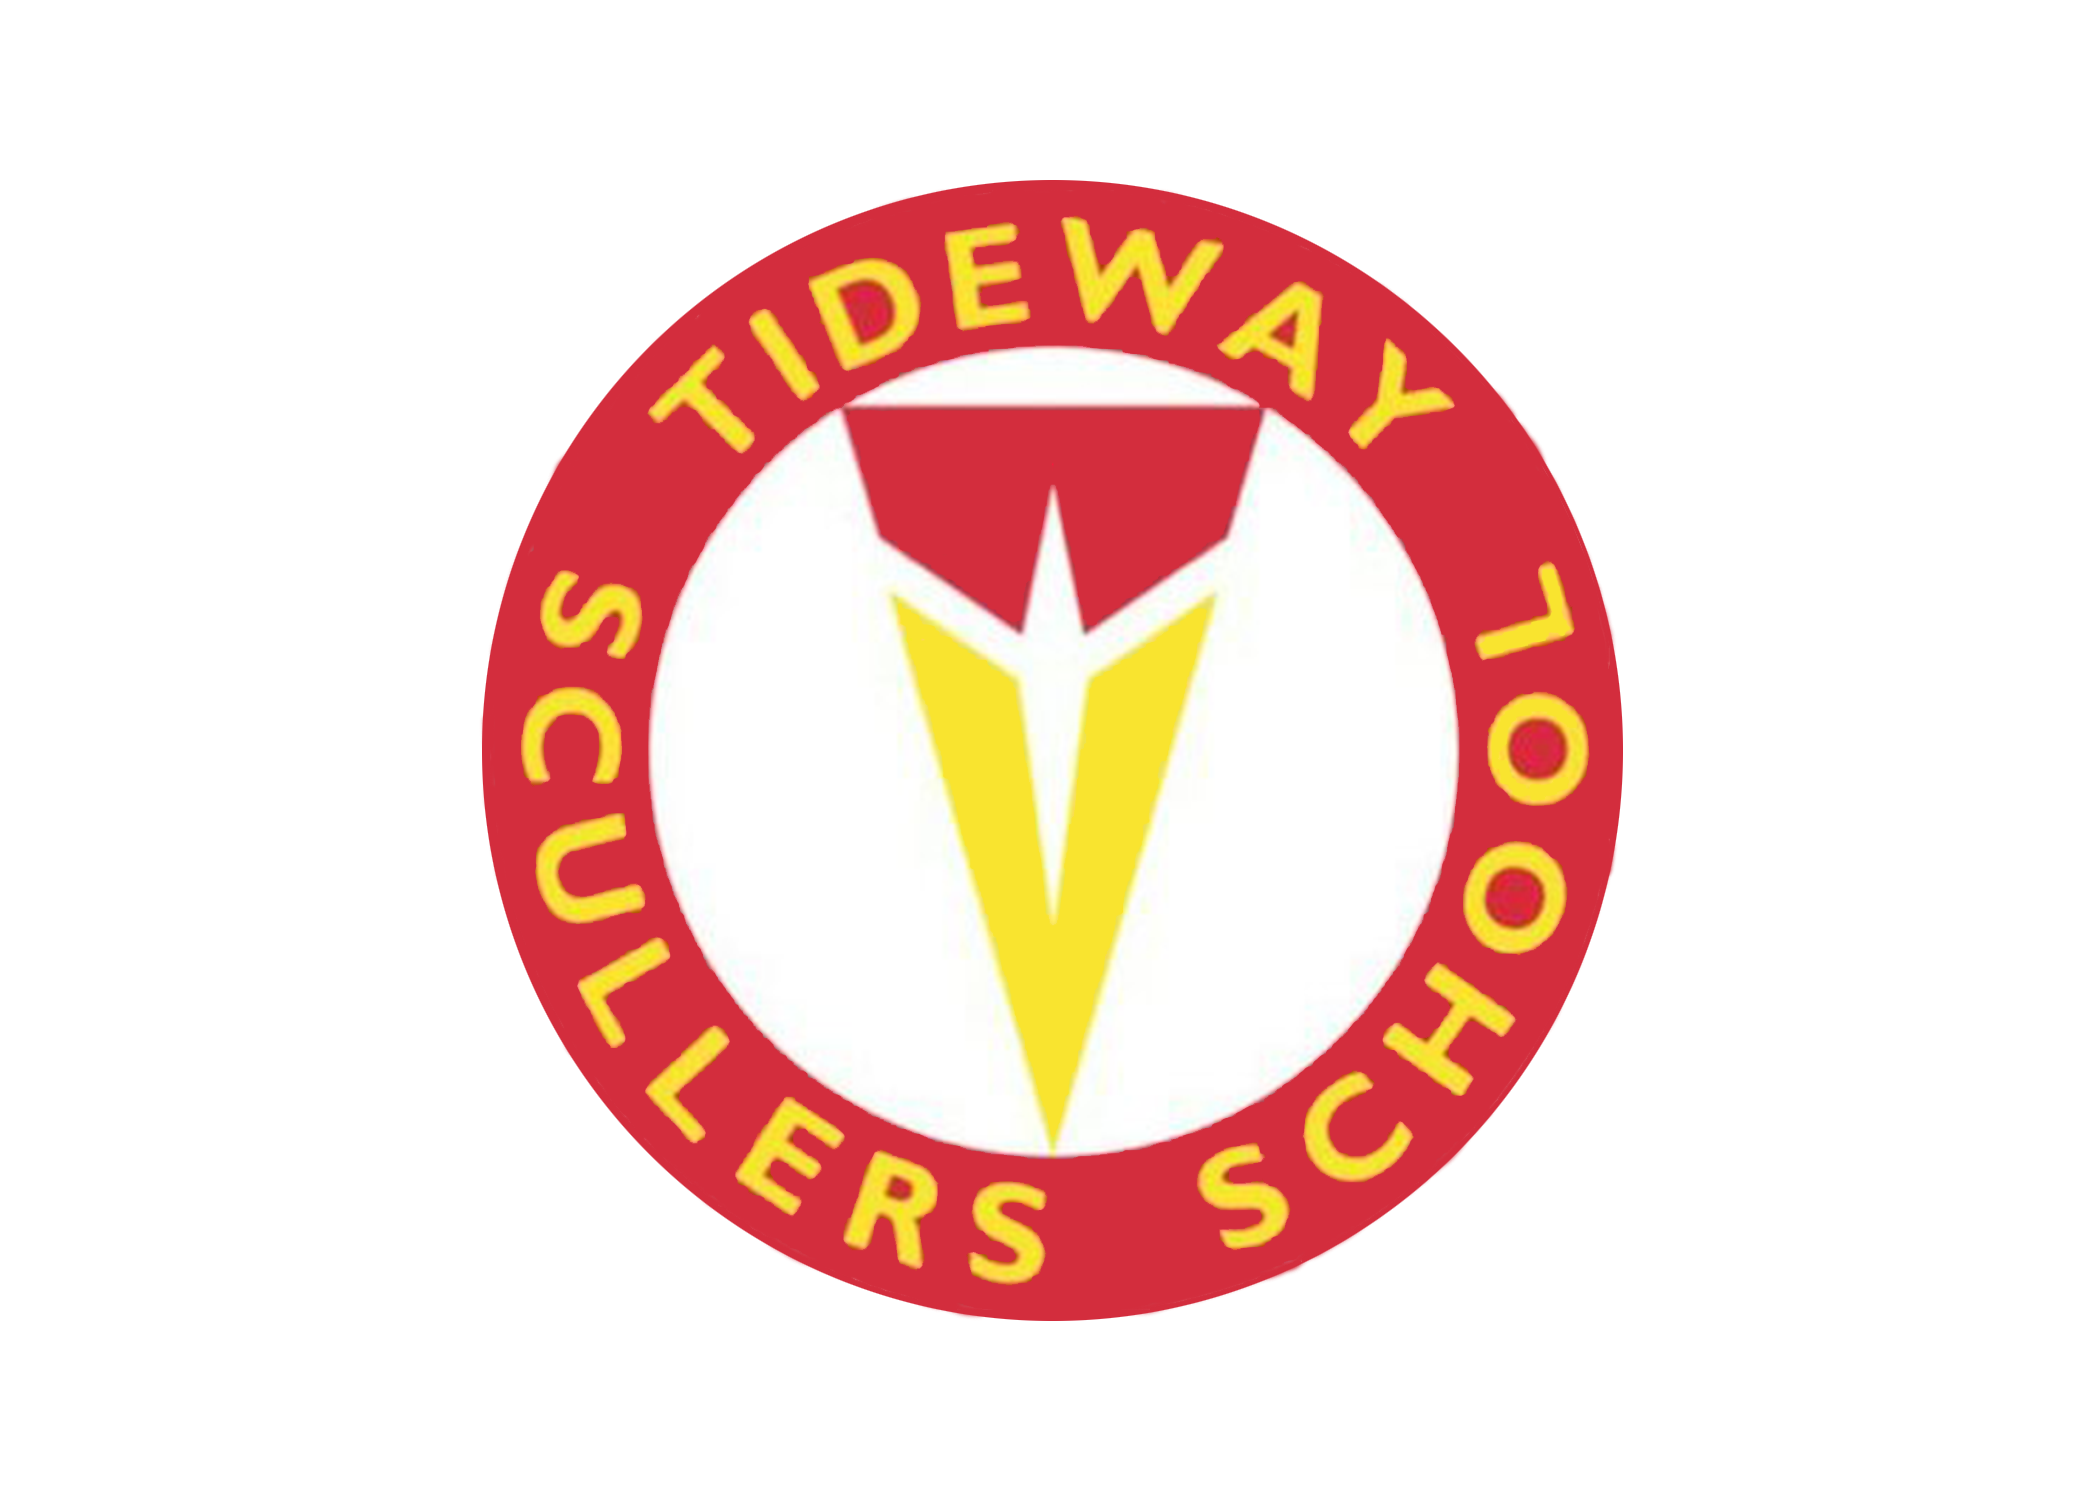 Tideway Scullers School